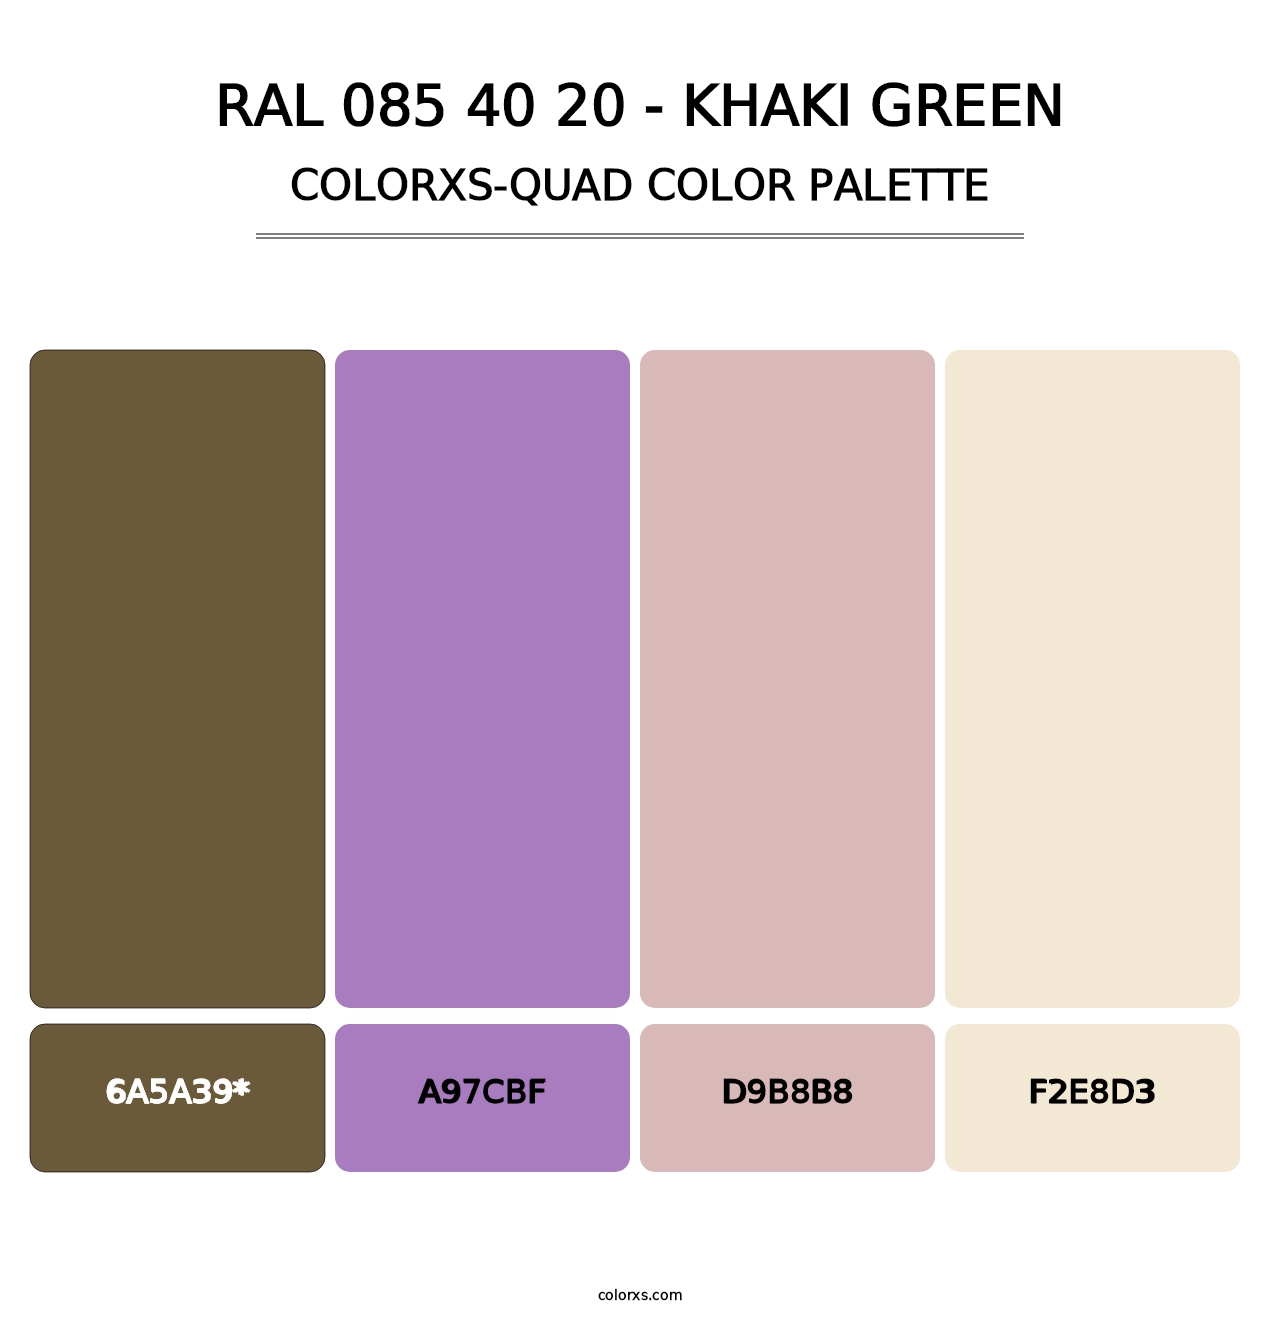 RAL 085 40 20 - Khaki Green - Colorxs Quad Palette